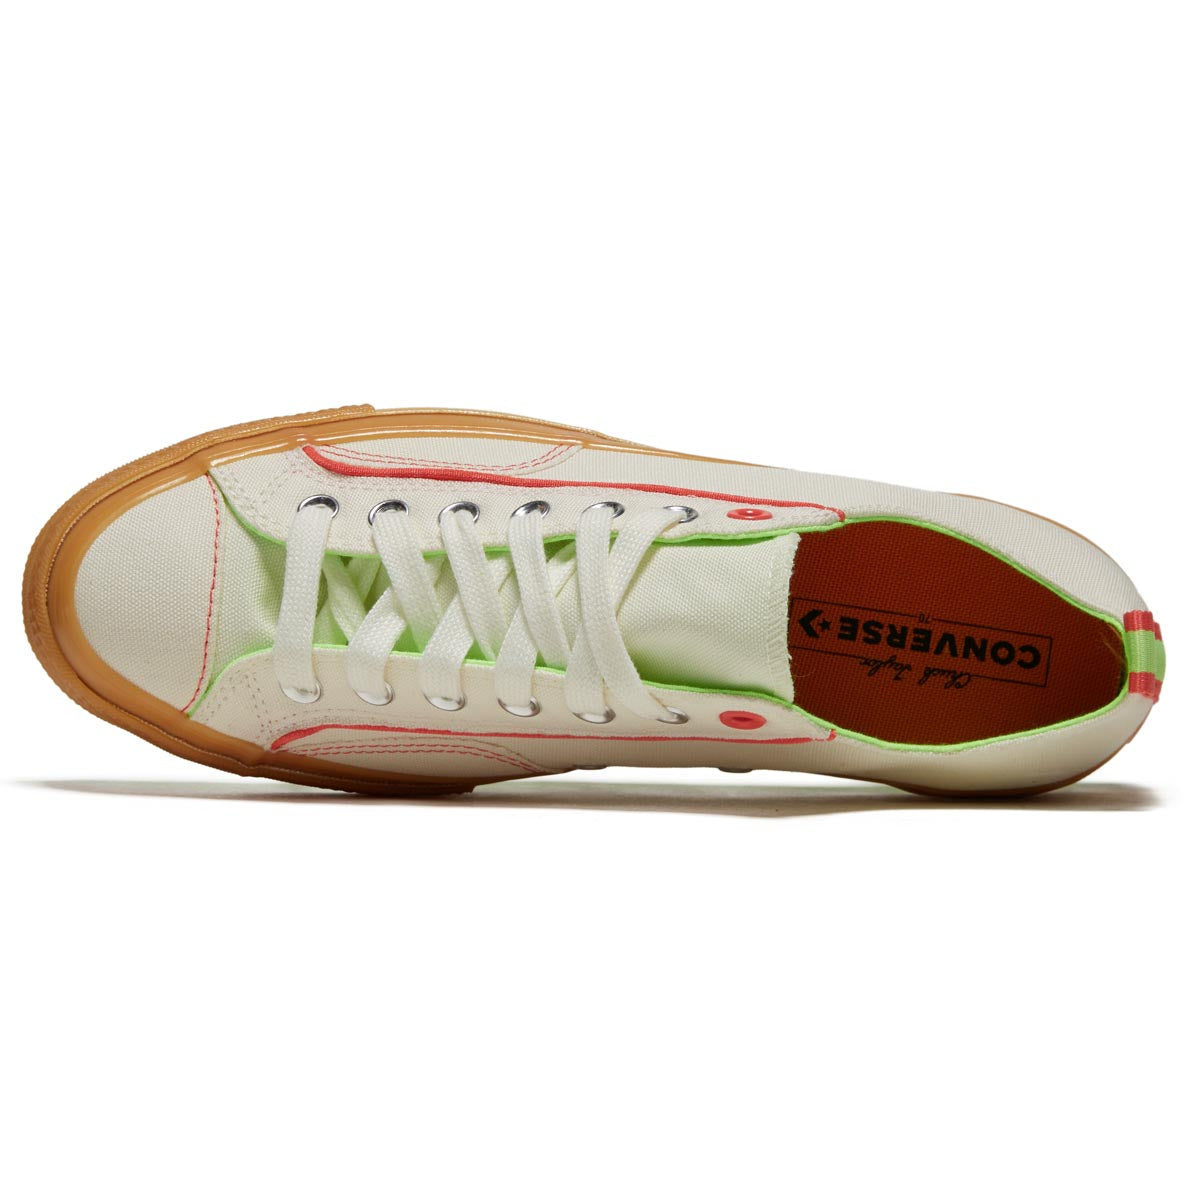 Converse Chuck 70 Ox Shoes - Egret/Gum/Watermelon Slushy image 3